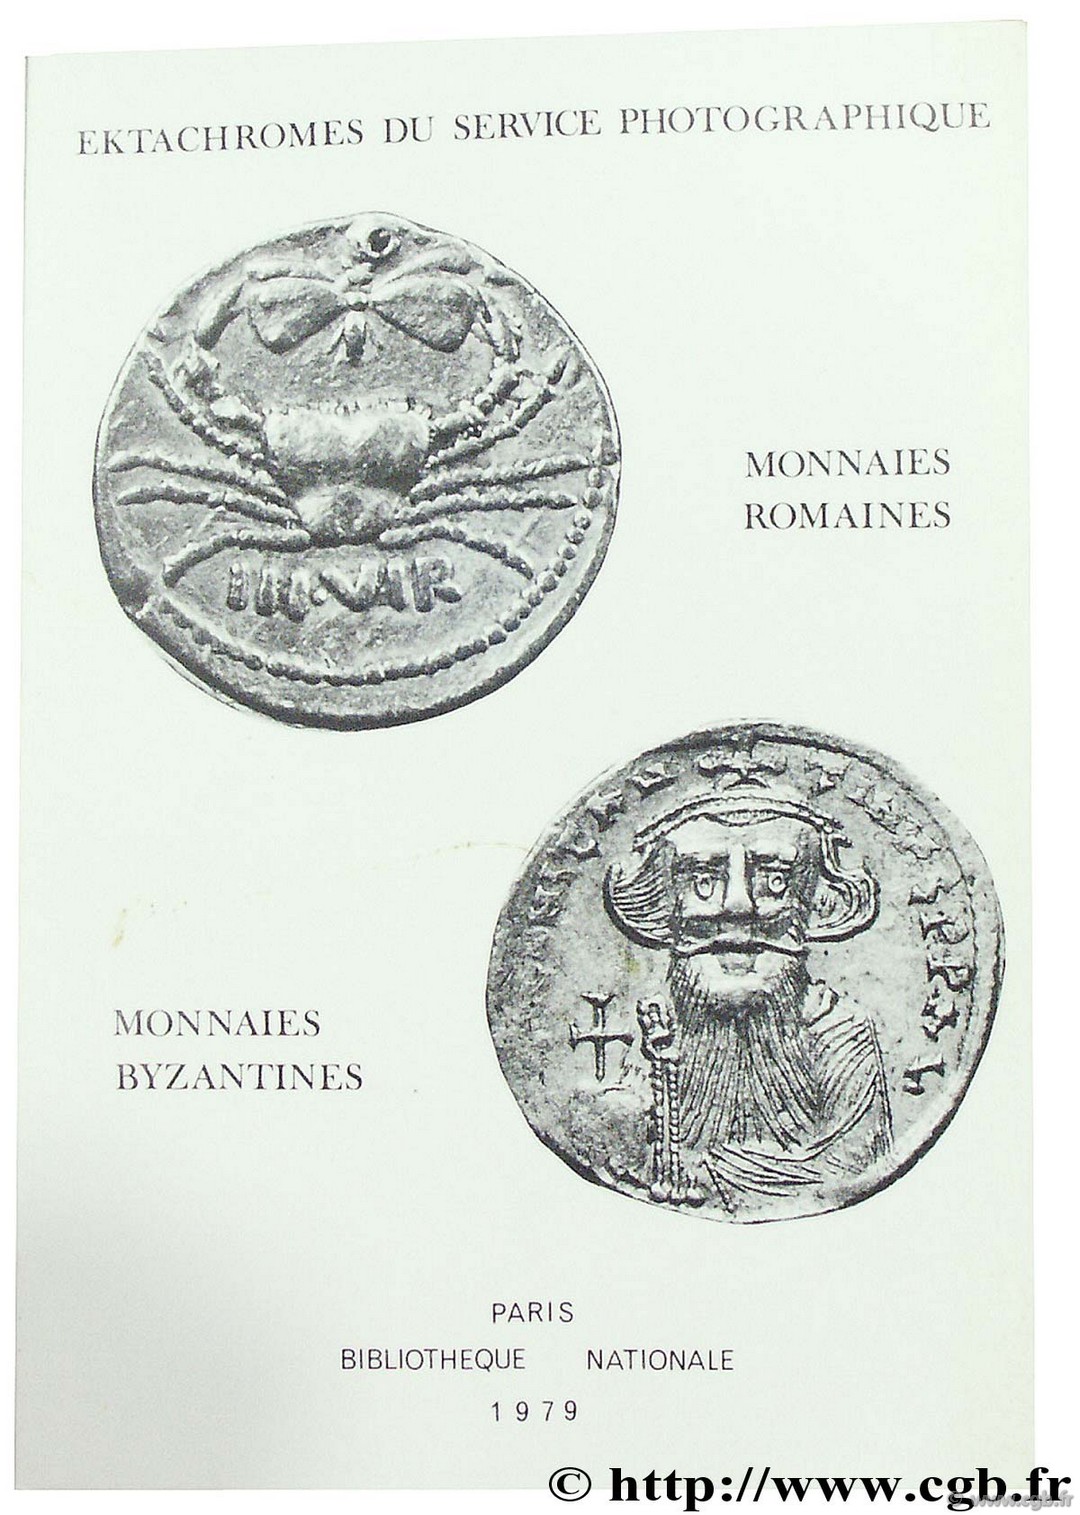 Choix de monnaies romaines, Bibliothèque nationale photothèque PLOYART B., GIARD J.-B., MORRISSON C.